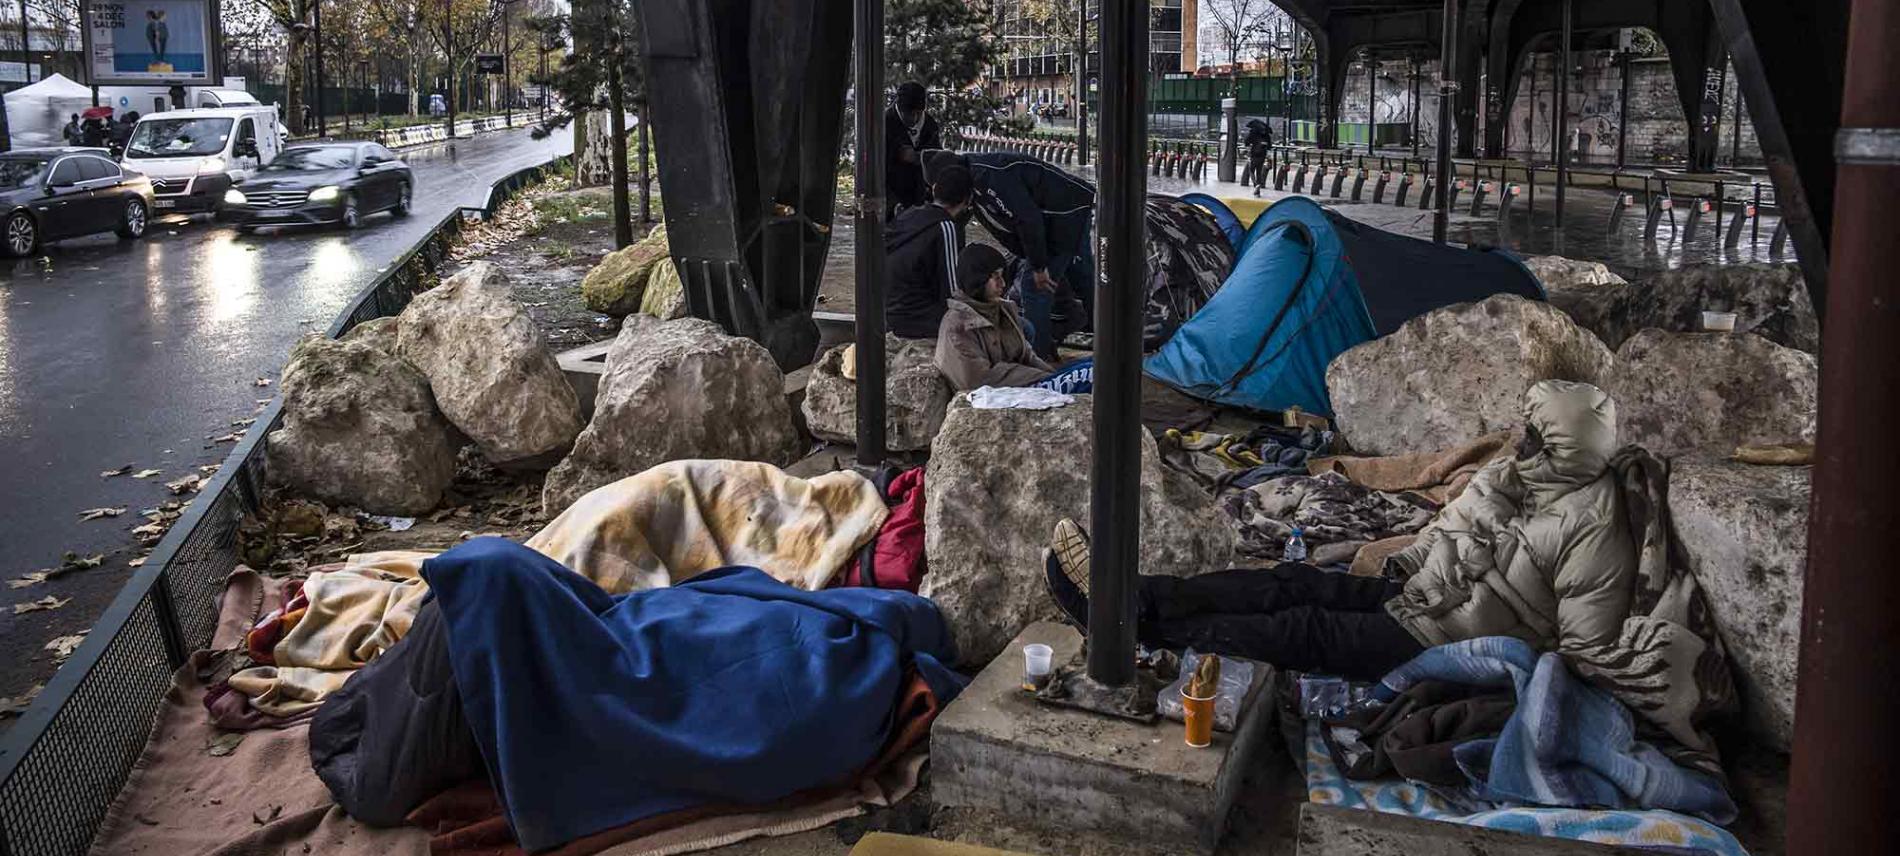 In der französischen Hauptstadt sind viele Migrant*innen gezwungen, in behelfsmäßigen Lagern unter desatrösen hygienischen Bedingungen zu kampieren. Pgoto: Olivier Papegnies